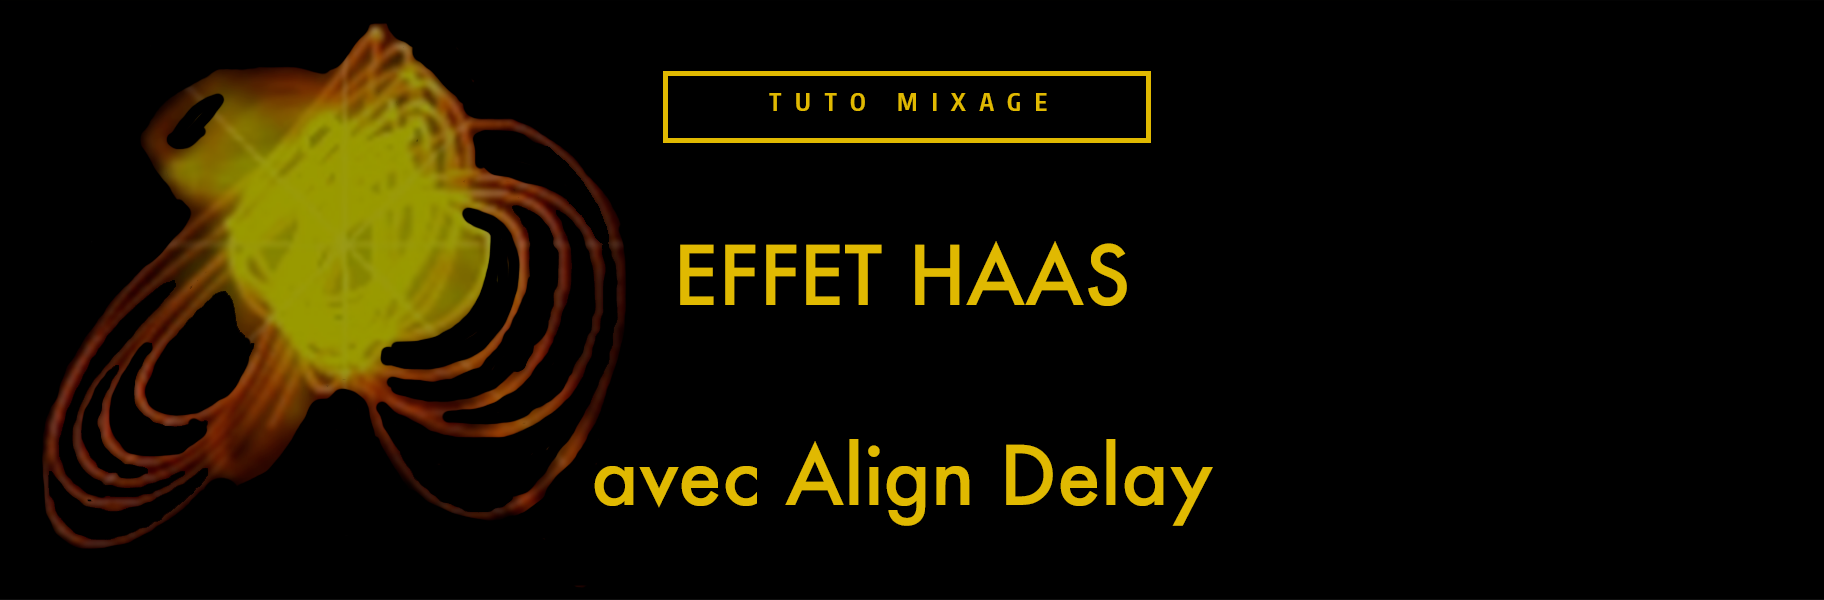 Tutoriel Ableton Live - Align Delay : l'utilitaire de mix de live